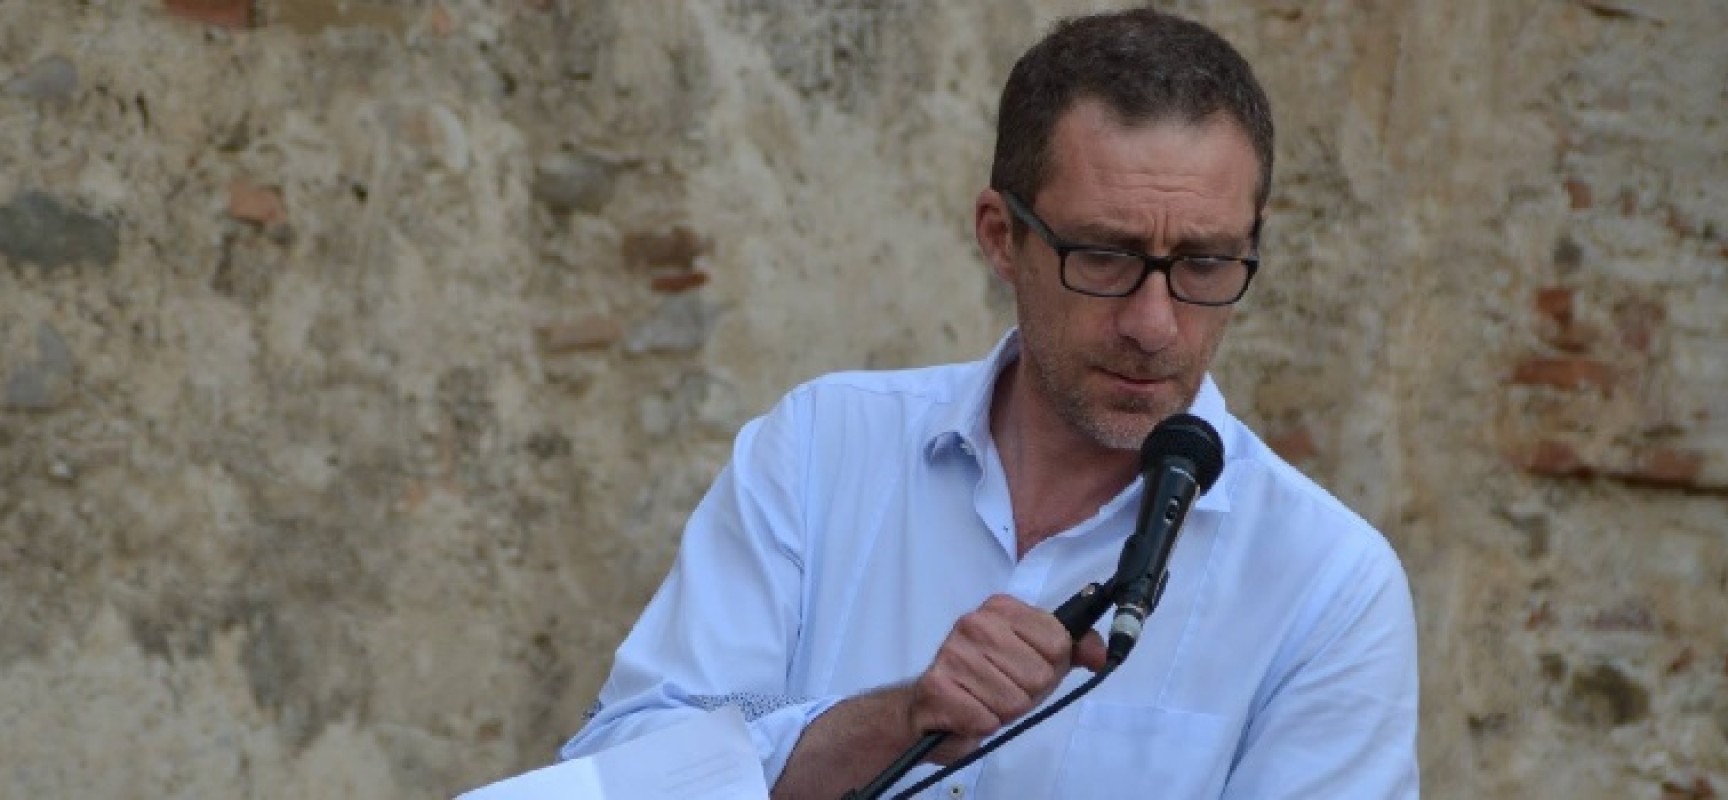 Pietro Casella: “Candidatura Gianni non gradita di certo al PD, grazie a coloro che lo sosterranno”